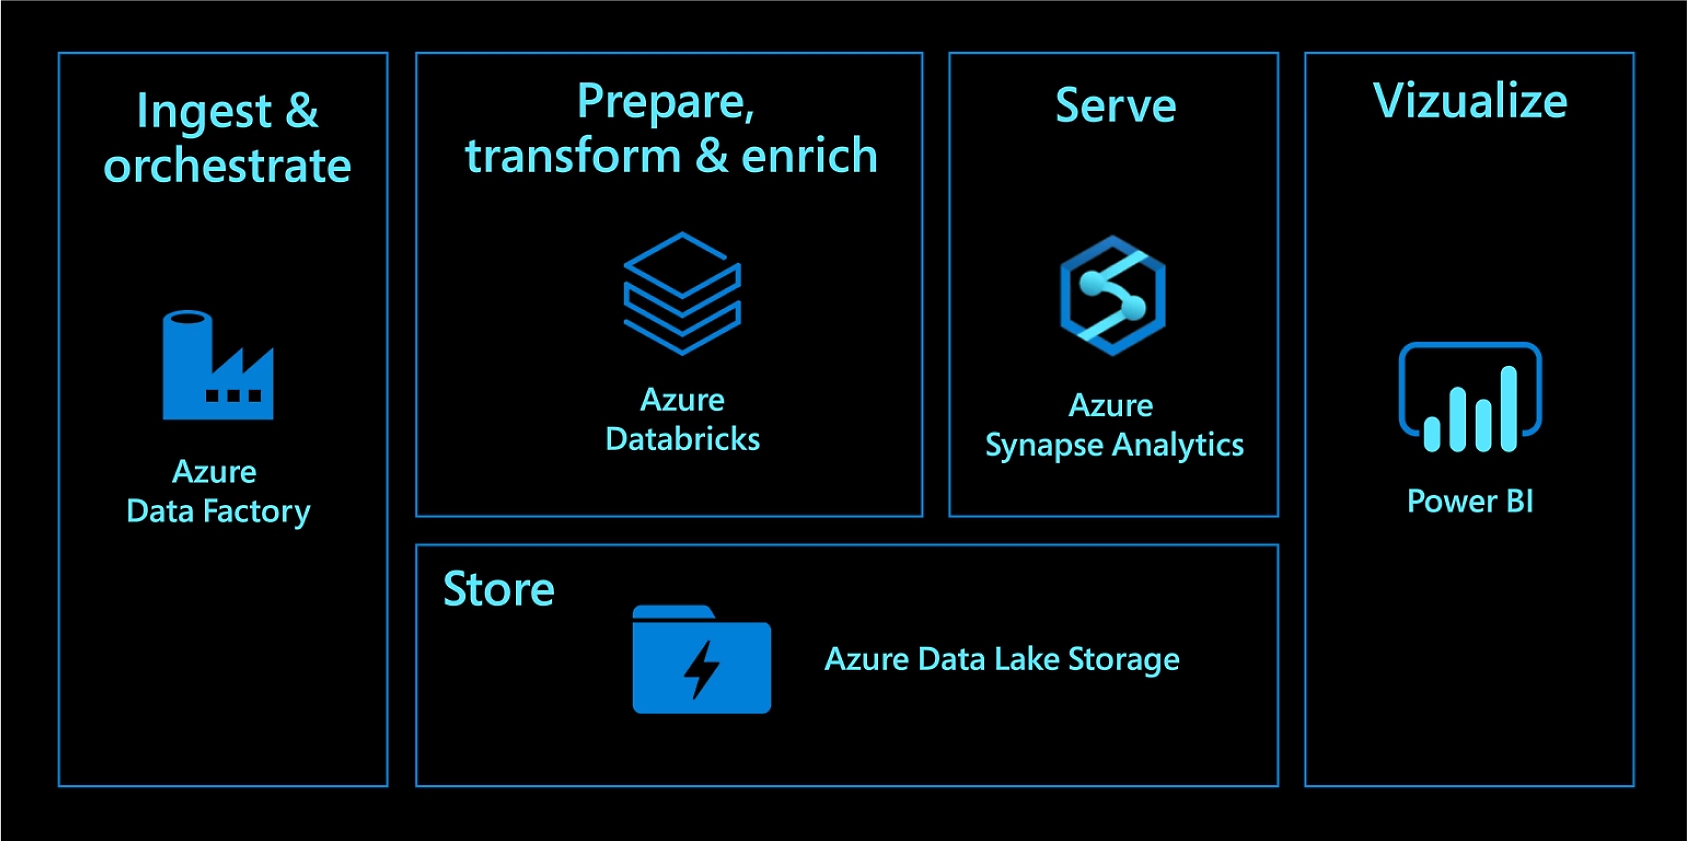 使用 Azure Data Factory 進行擷取與協調。使用 Azure Databricks 進行準備、轉換與擴充。使用 Azure Synapse Analytics 提供服務。使用 Azure Data Lake Storage 進行儲存。使用 Power BI 進行視覺化。